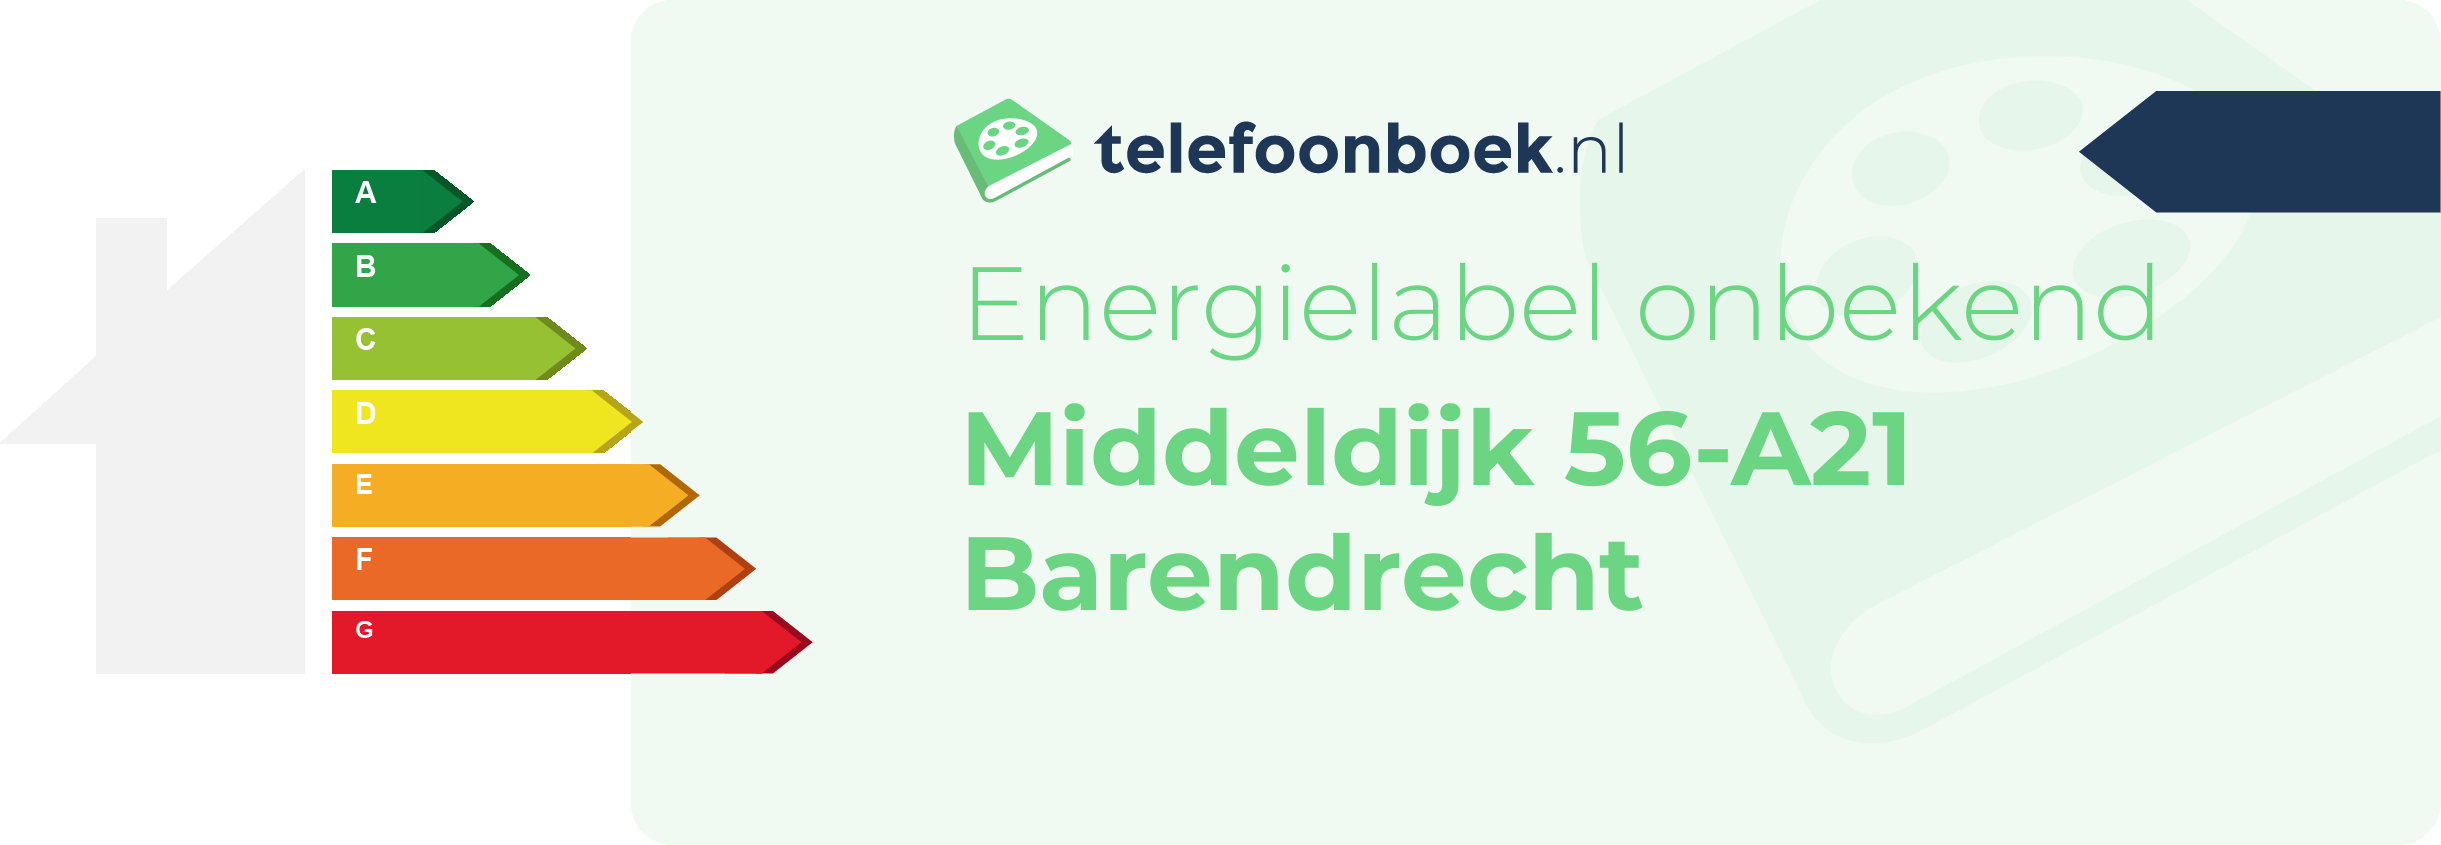 Energielabel Middeldijk 56-A21 Barendrecht